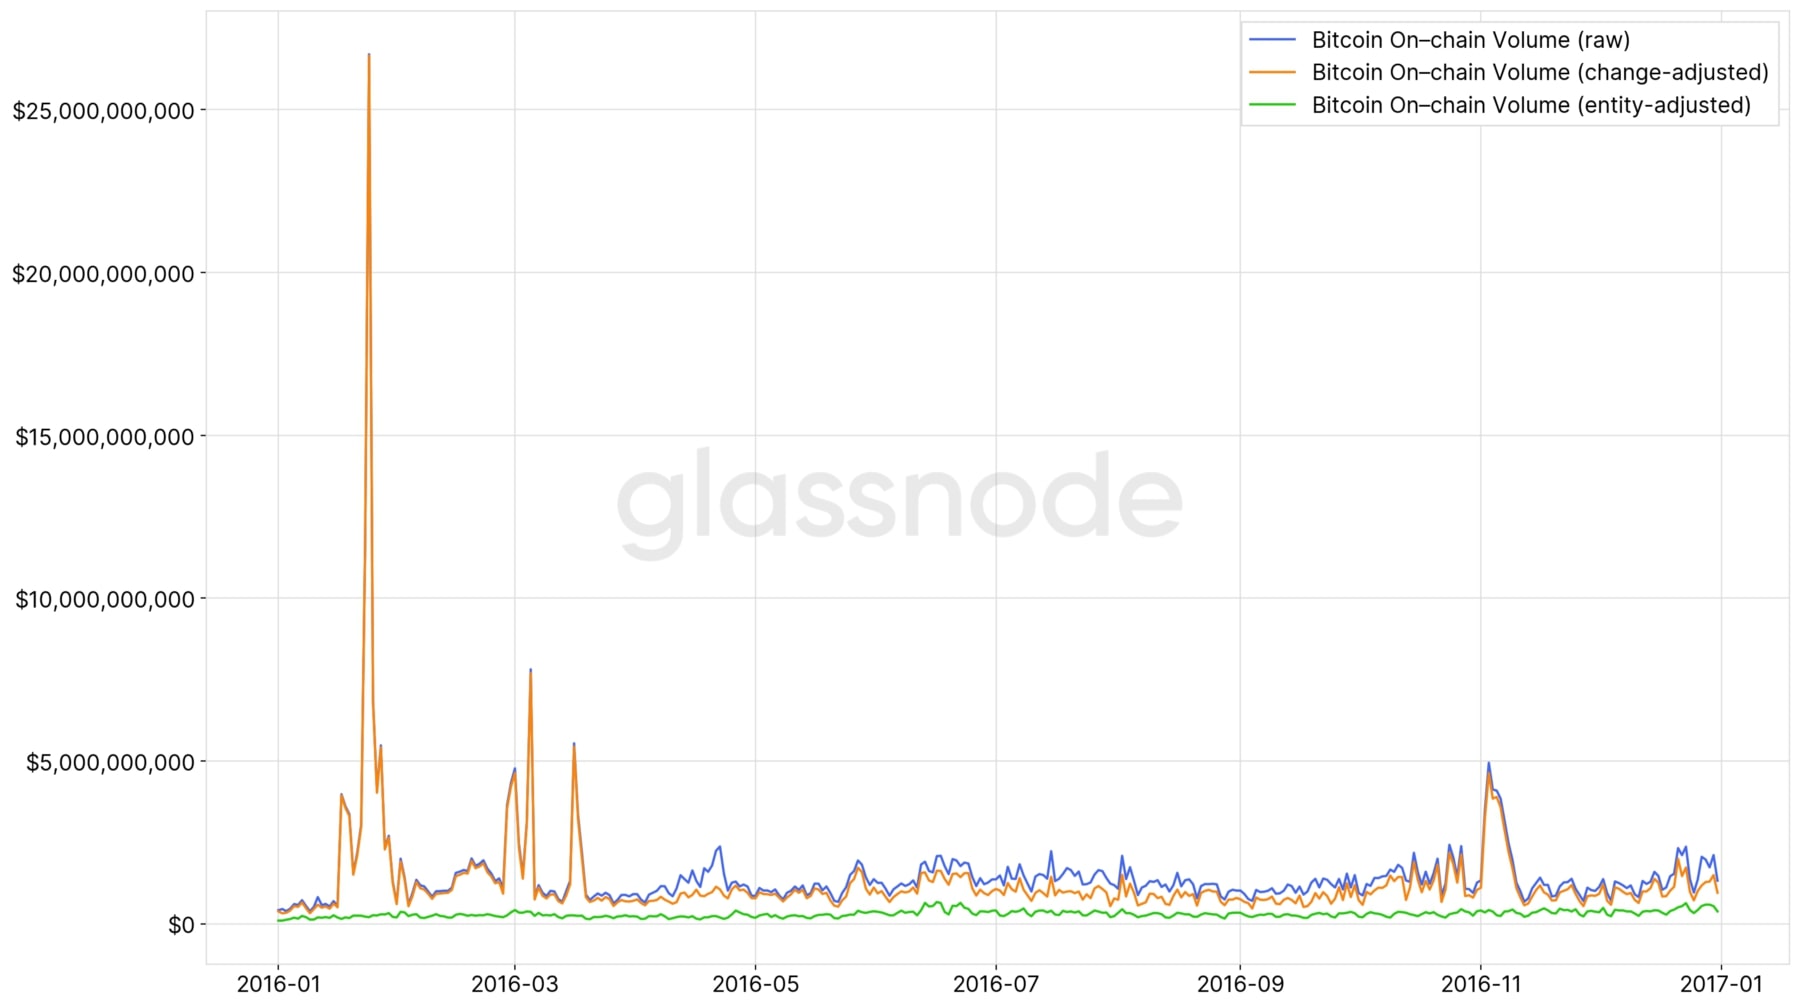 Hình 6 - Khối lượng giao dịch Bitcoin trên chuỗi hàng ngày trong năm 2016.